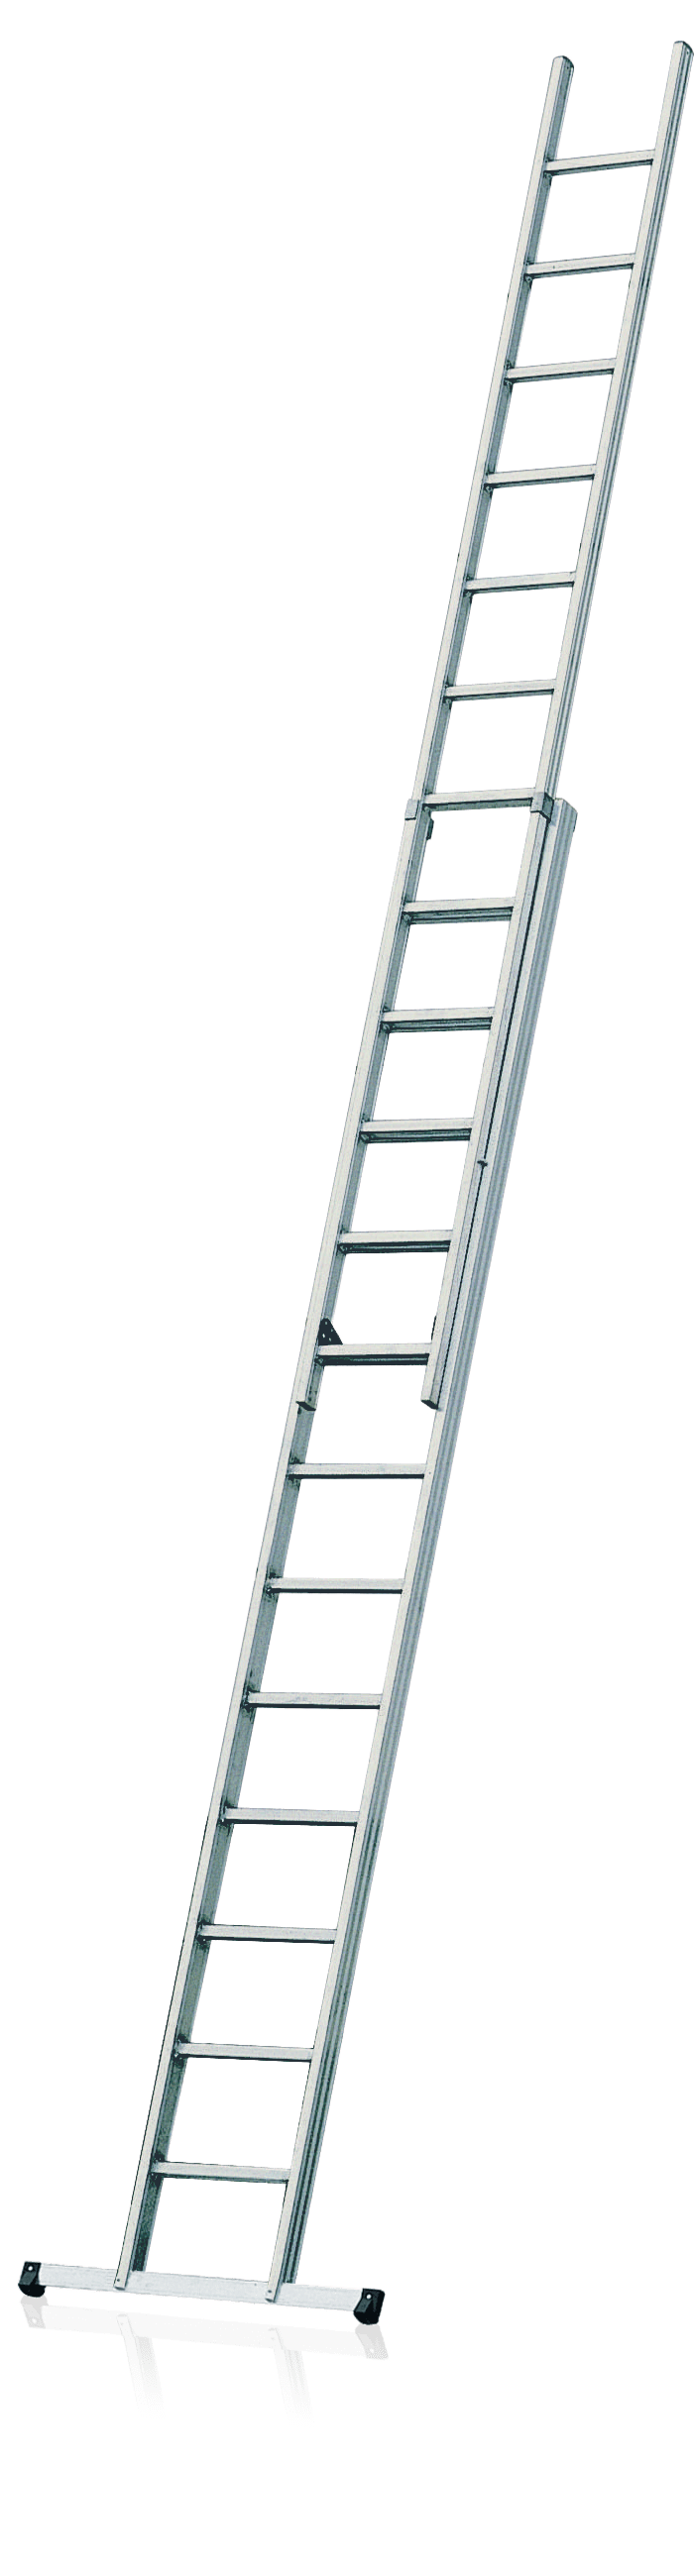 dvojdielny výsuvný rebrík R200